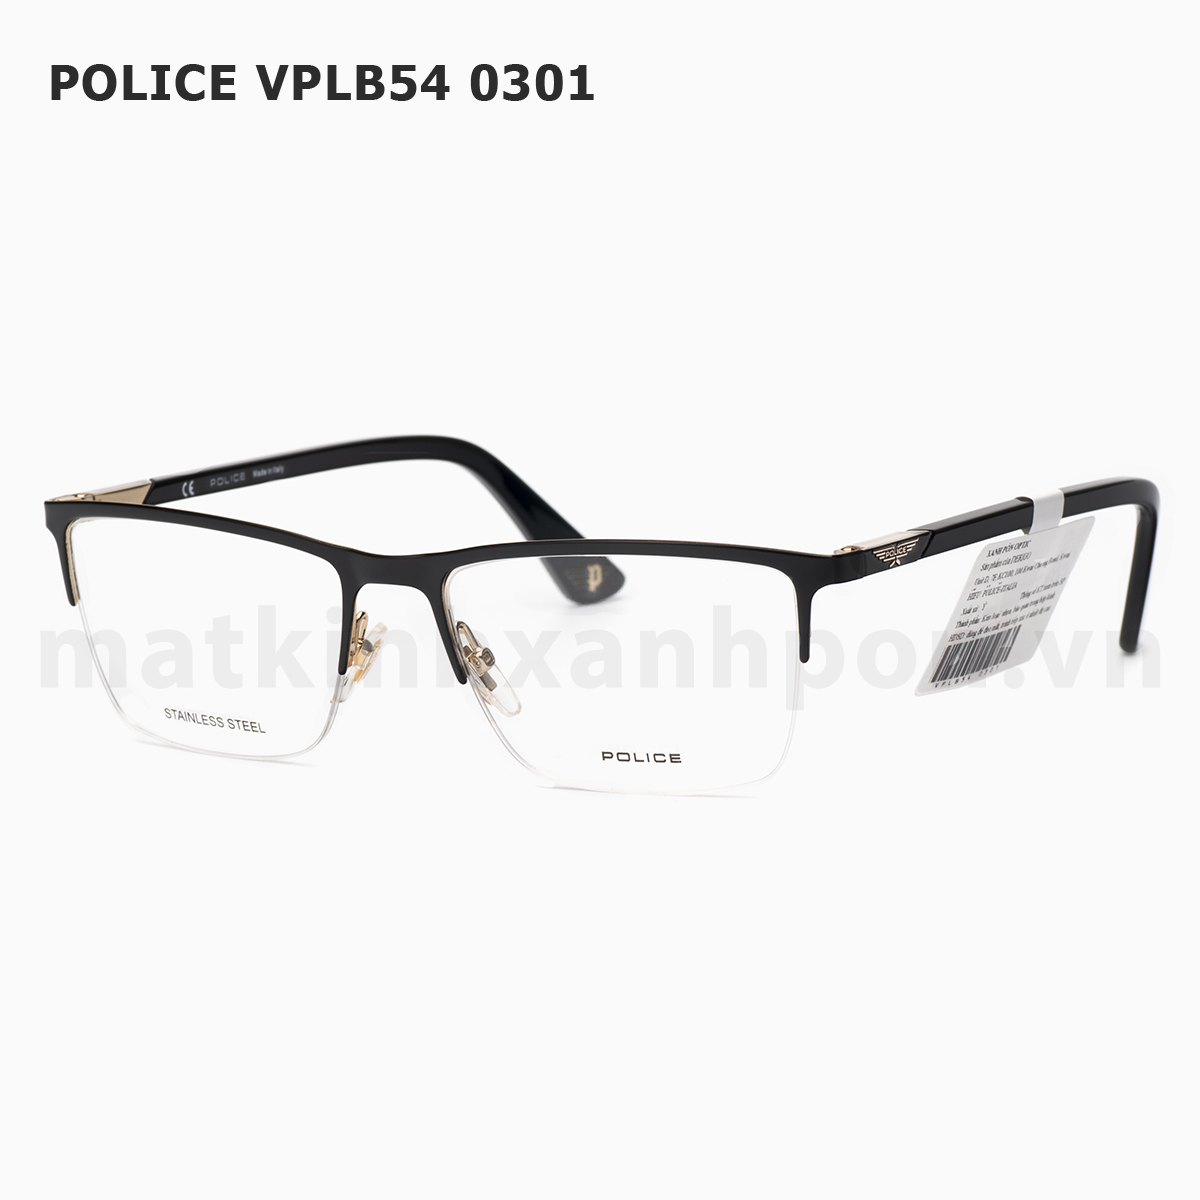 Police VPLB54 0301